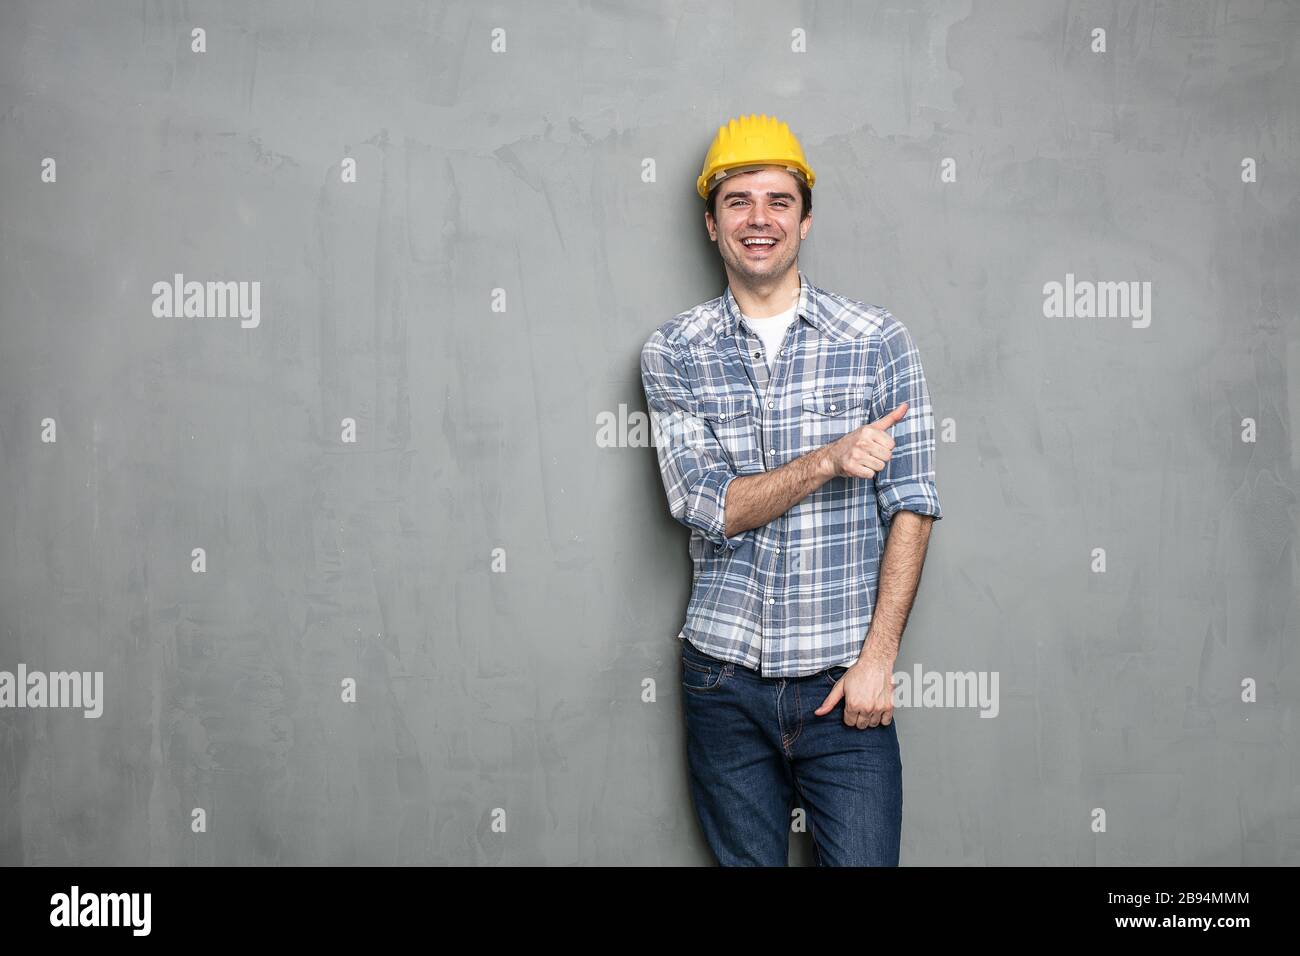 Selbstbewusster junger Arbeiter mit Sicherheitshelm, der eine leere Seite des Bildes für Text oder Werbung für etwas darstellt, an einer betongrauen Wand Stockfoto